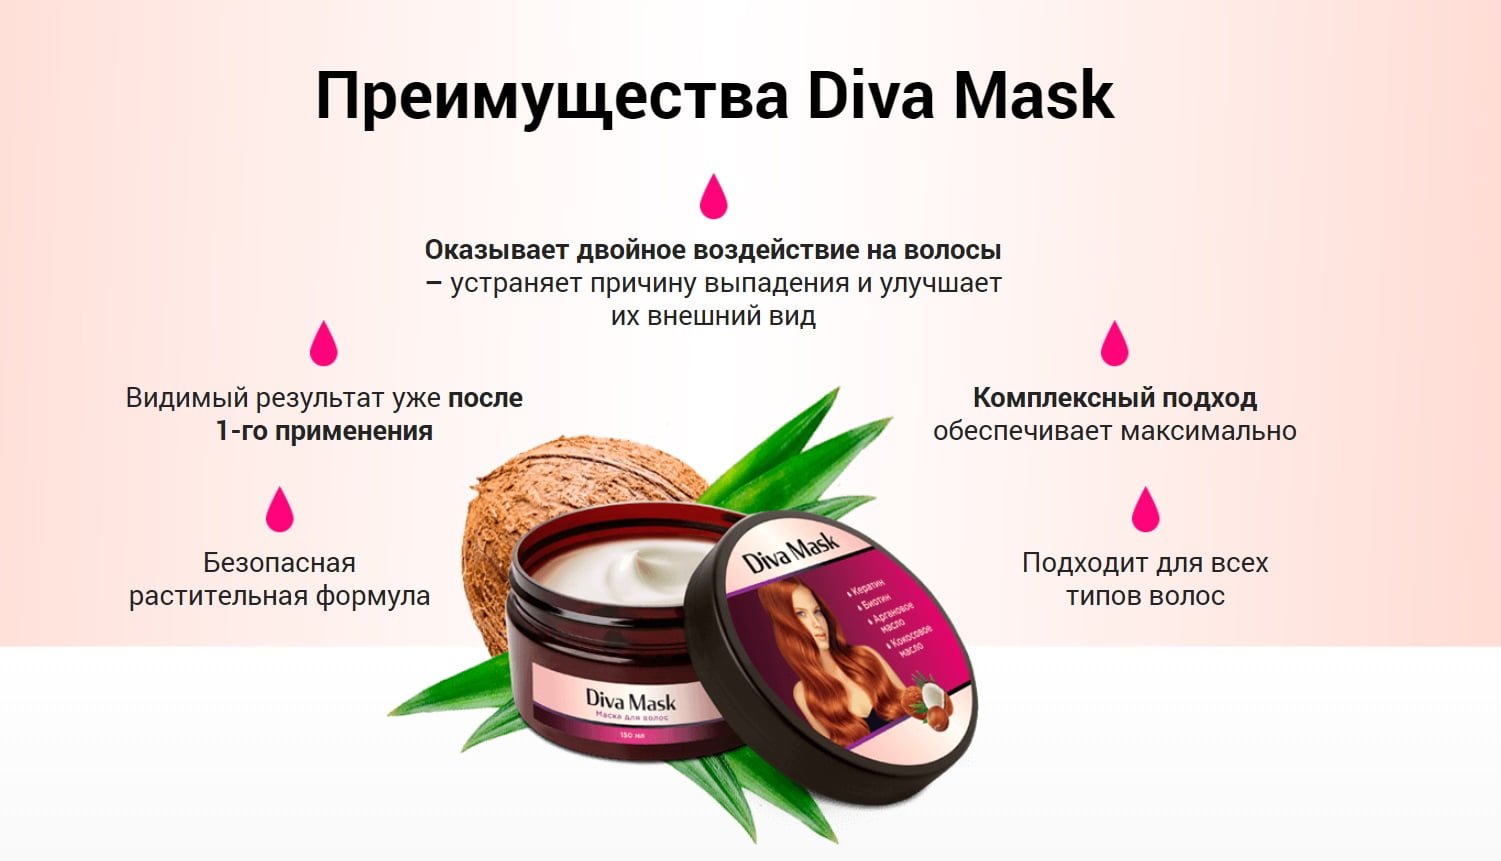 Преимущества Diva Mask